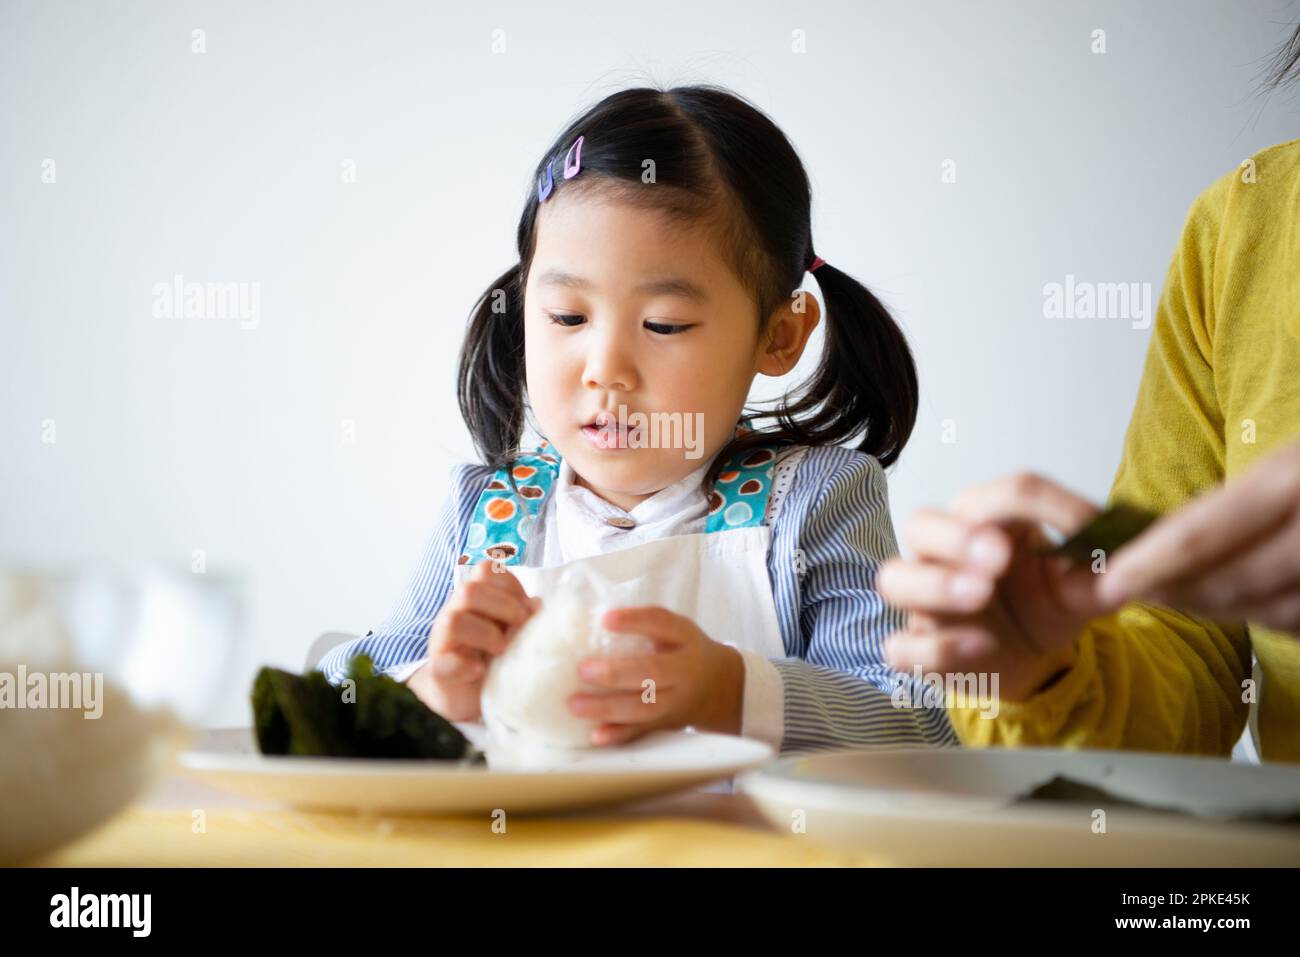 Girl making onigiri Stock Photo